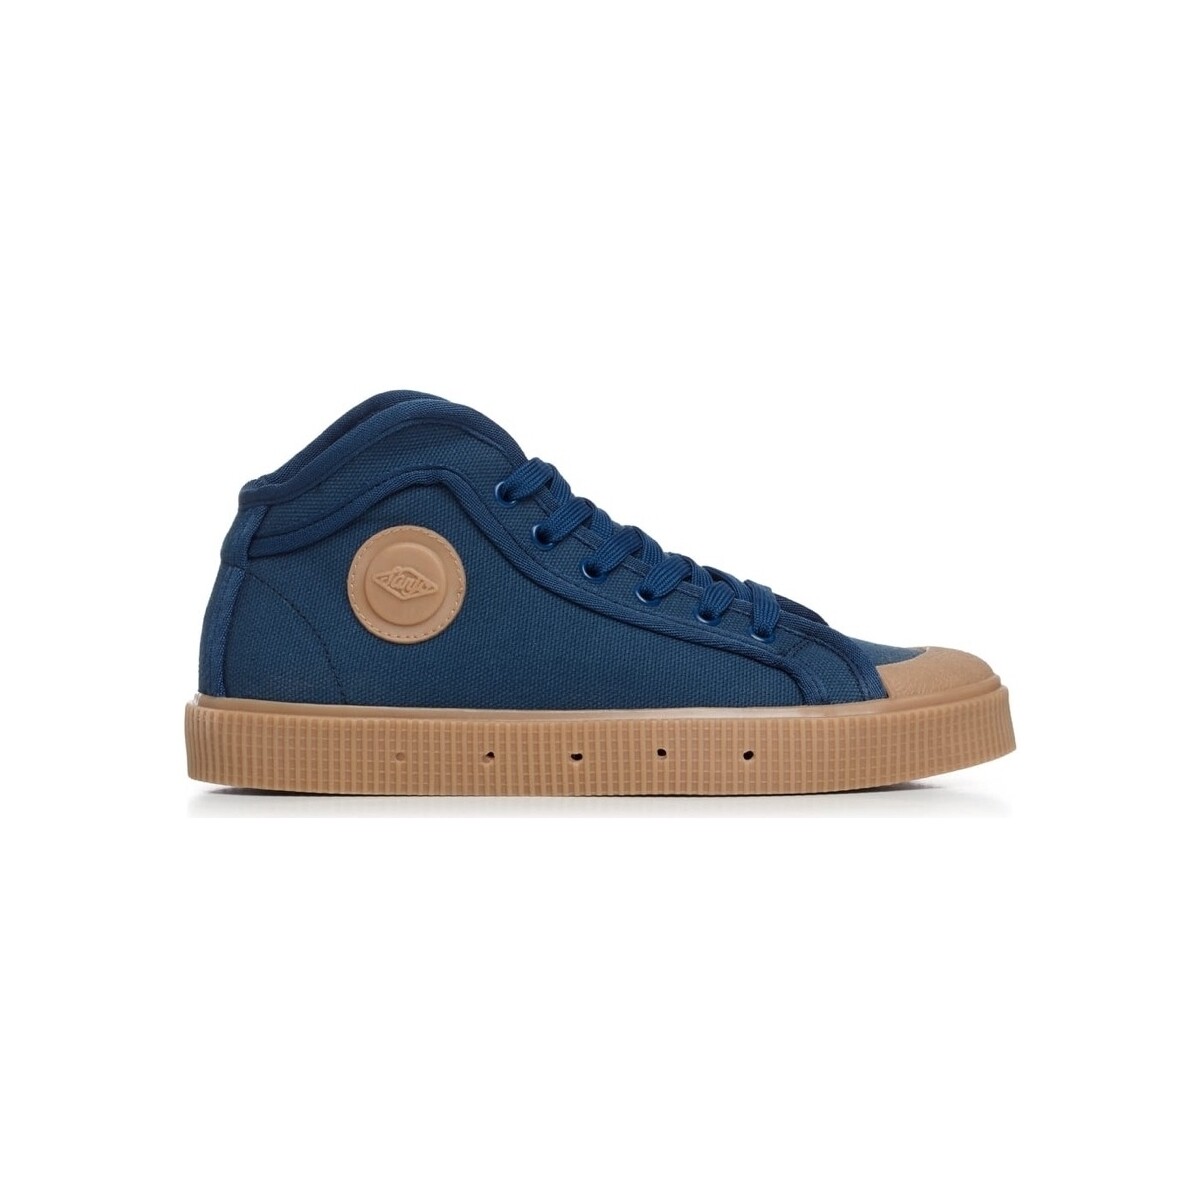 Schoenen Heren Lage sneakers Sanjo K100 - Blue/Gum Blauw